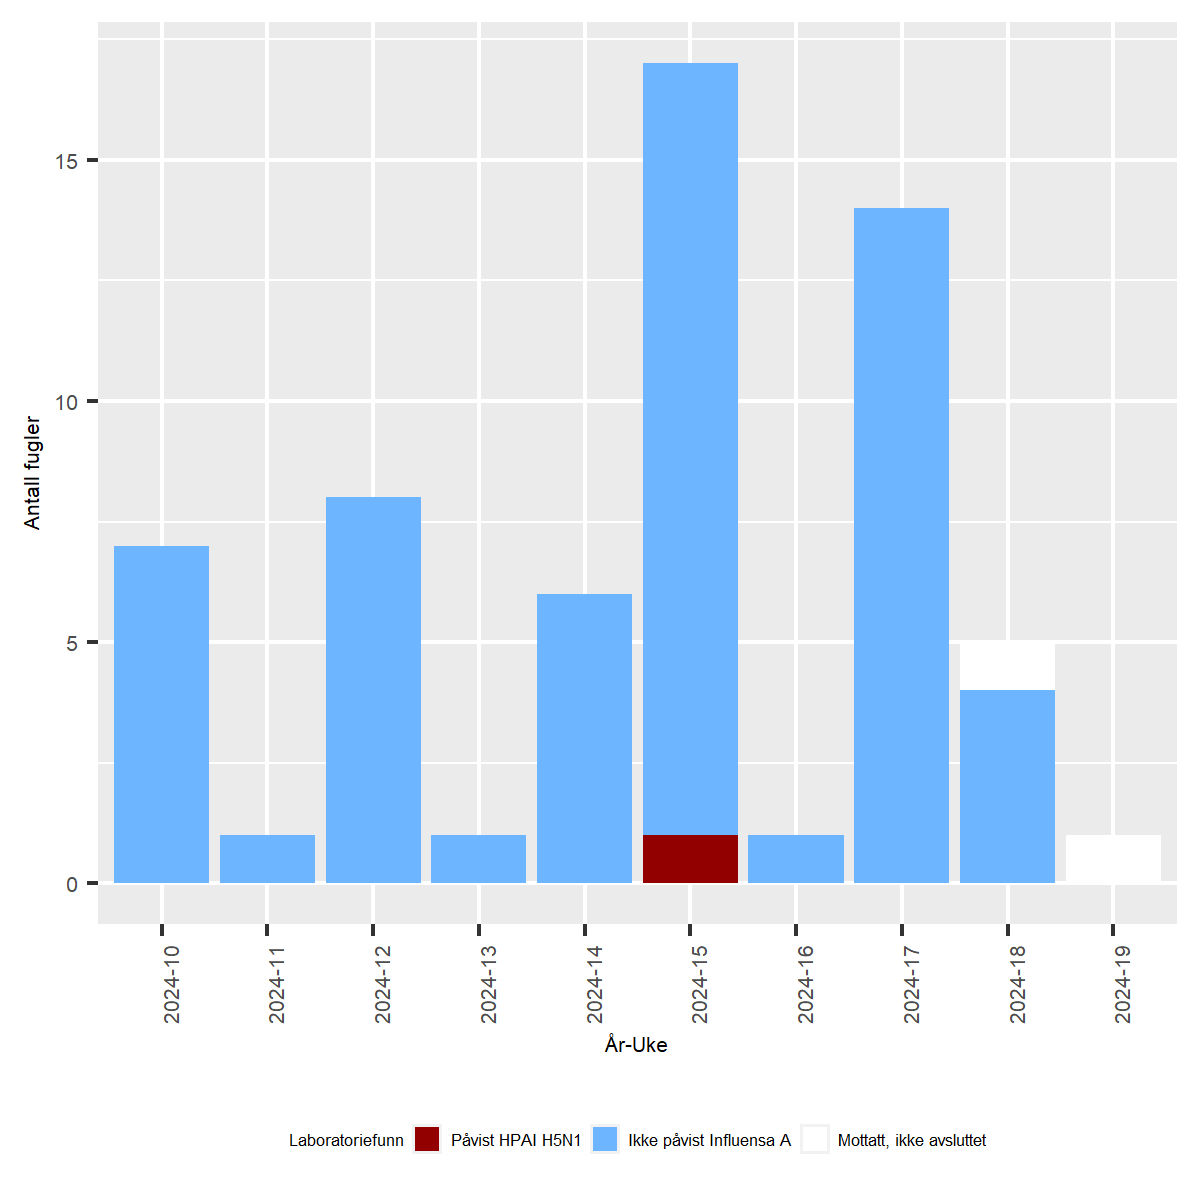 Graf som viser undersøkelser for høypatogen influensa hos ville fugler i Norge i løpet av de siste to måneder